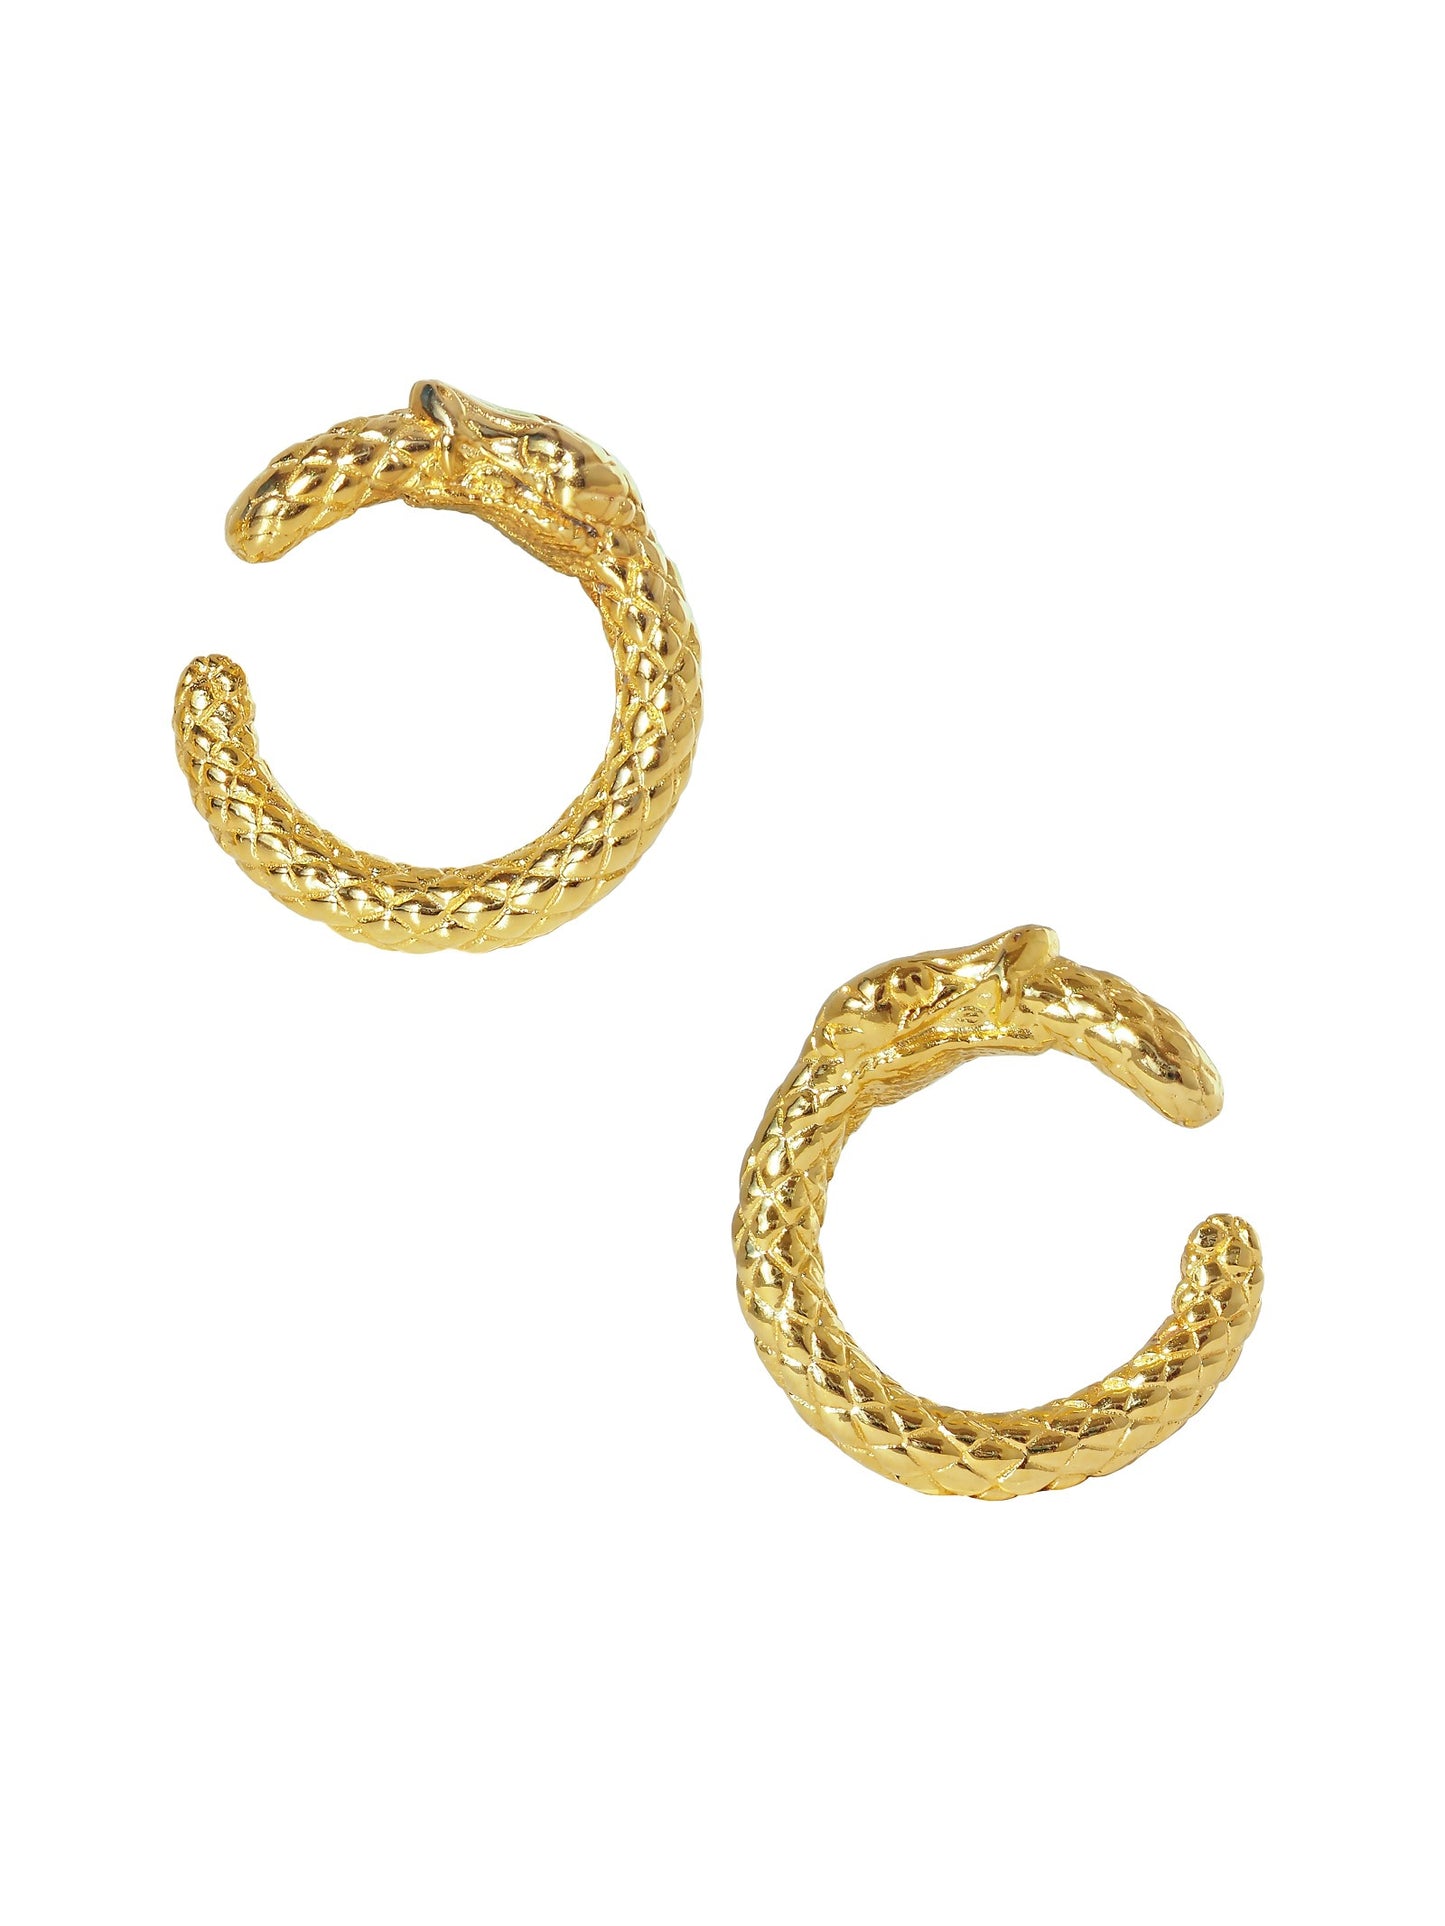 Ouroboros Hoop Earrings. 23ct Gold Vermeil